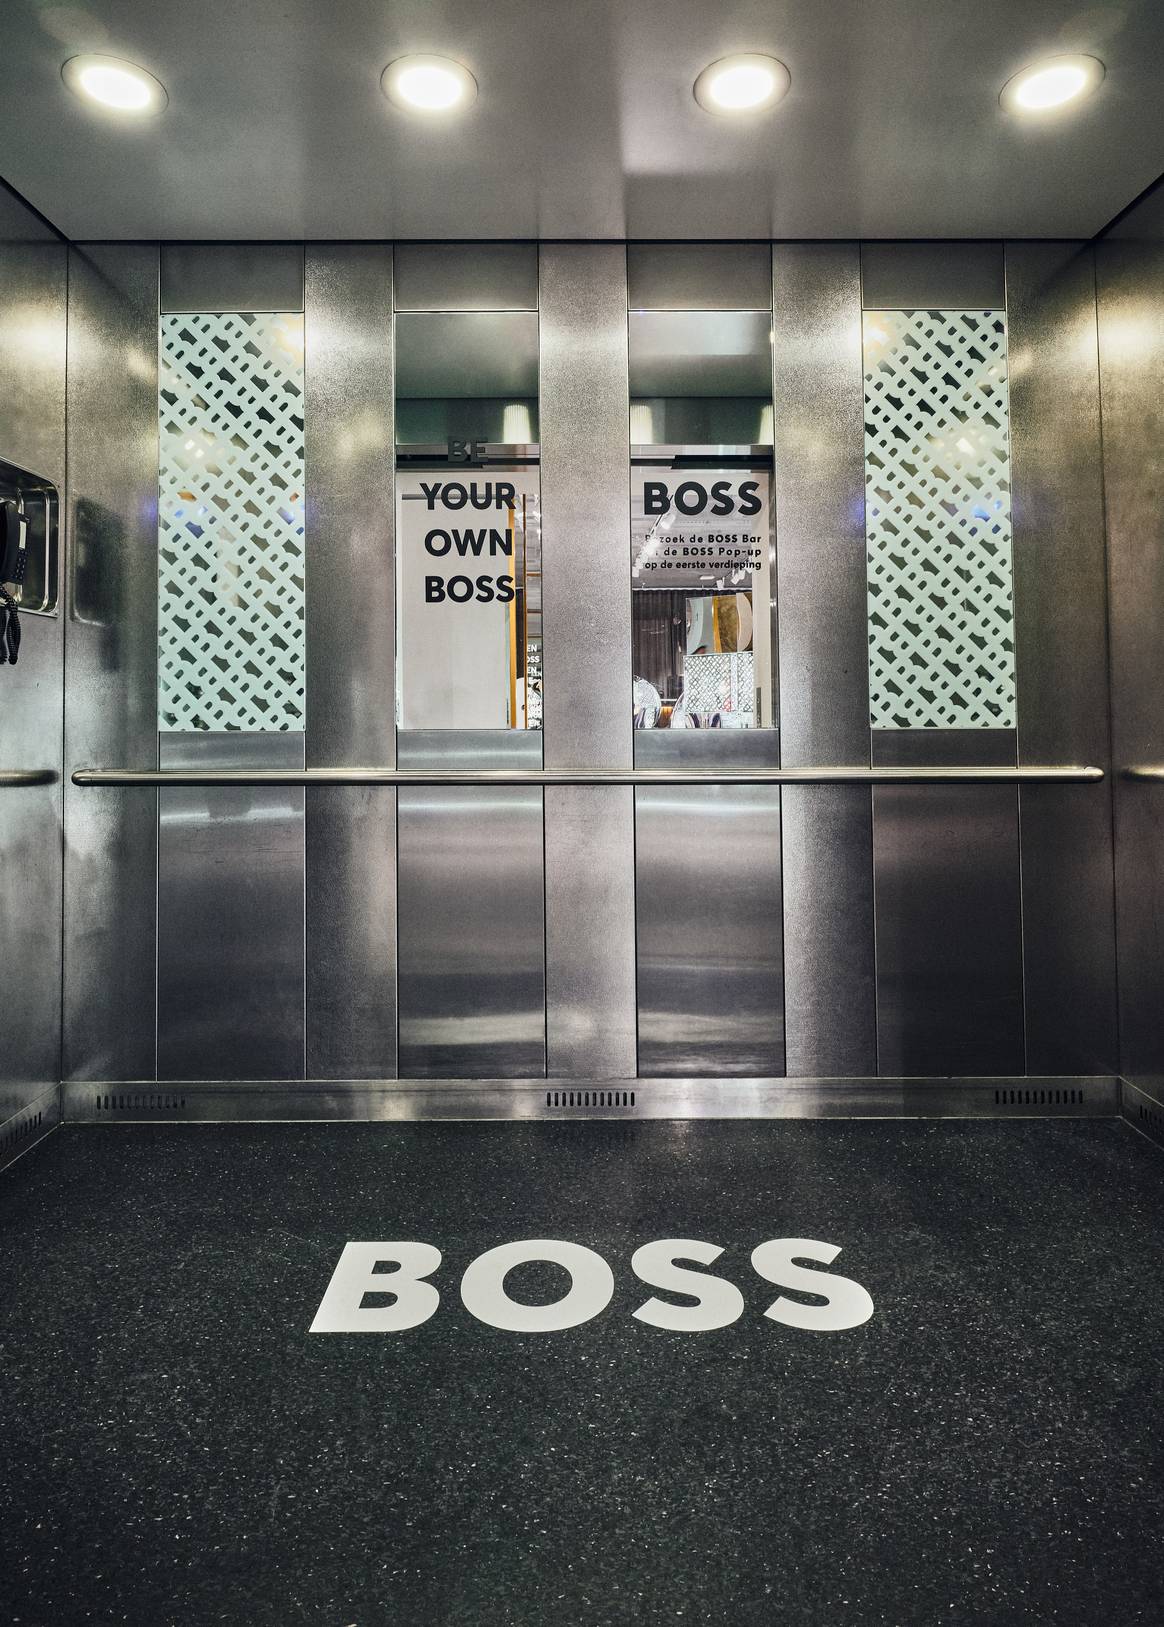 Der Fahrstuhl wurde mit dem Branding der Marke versehen. Bild: Boss x De Bijenkorf